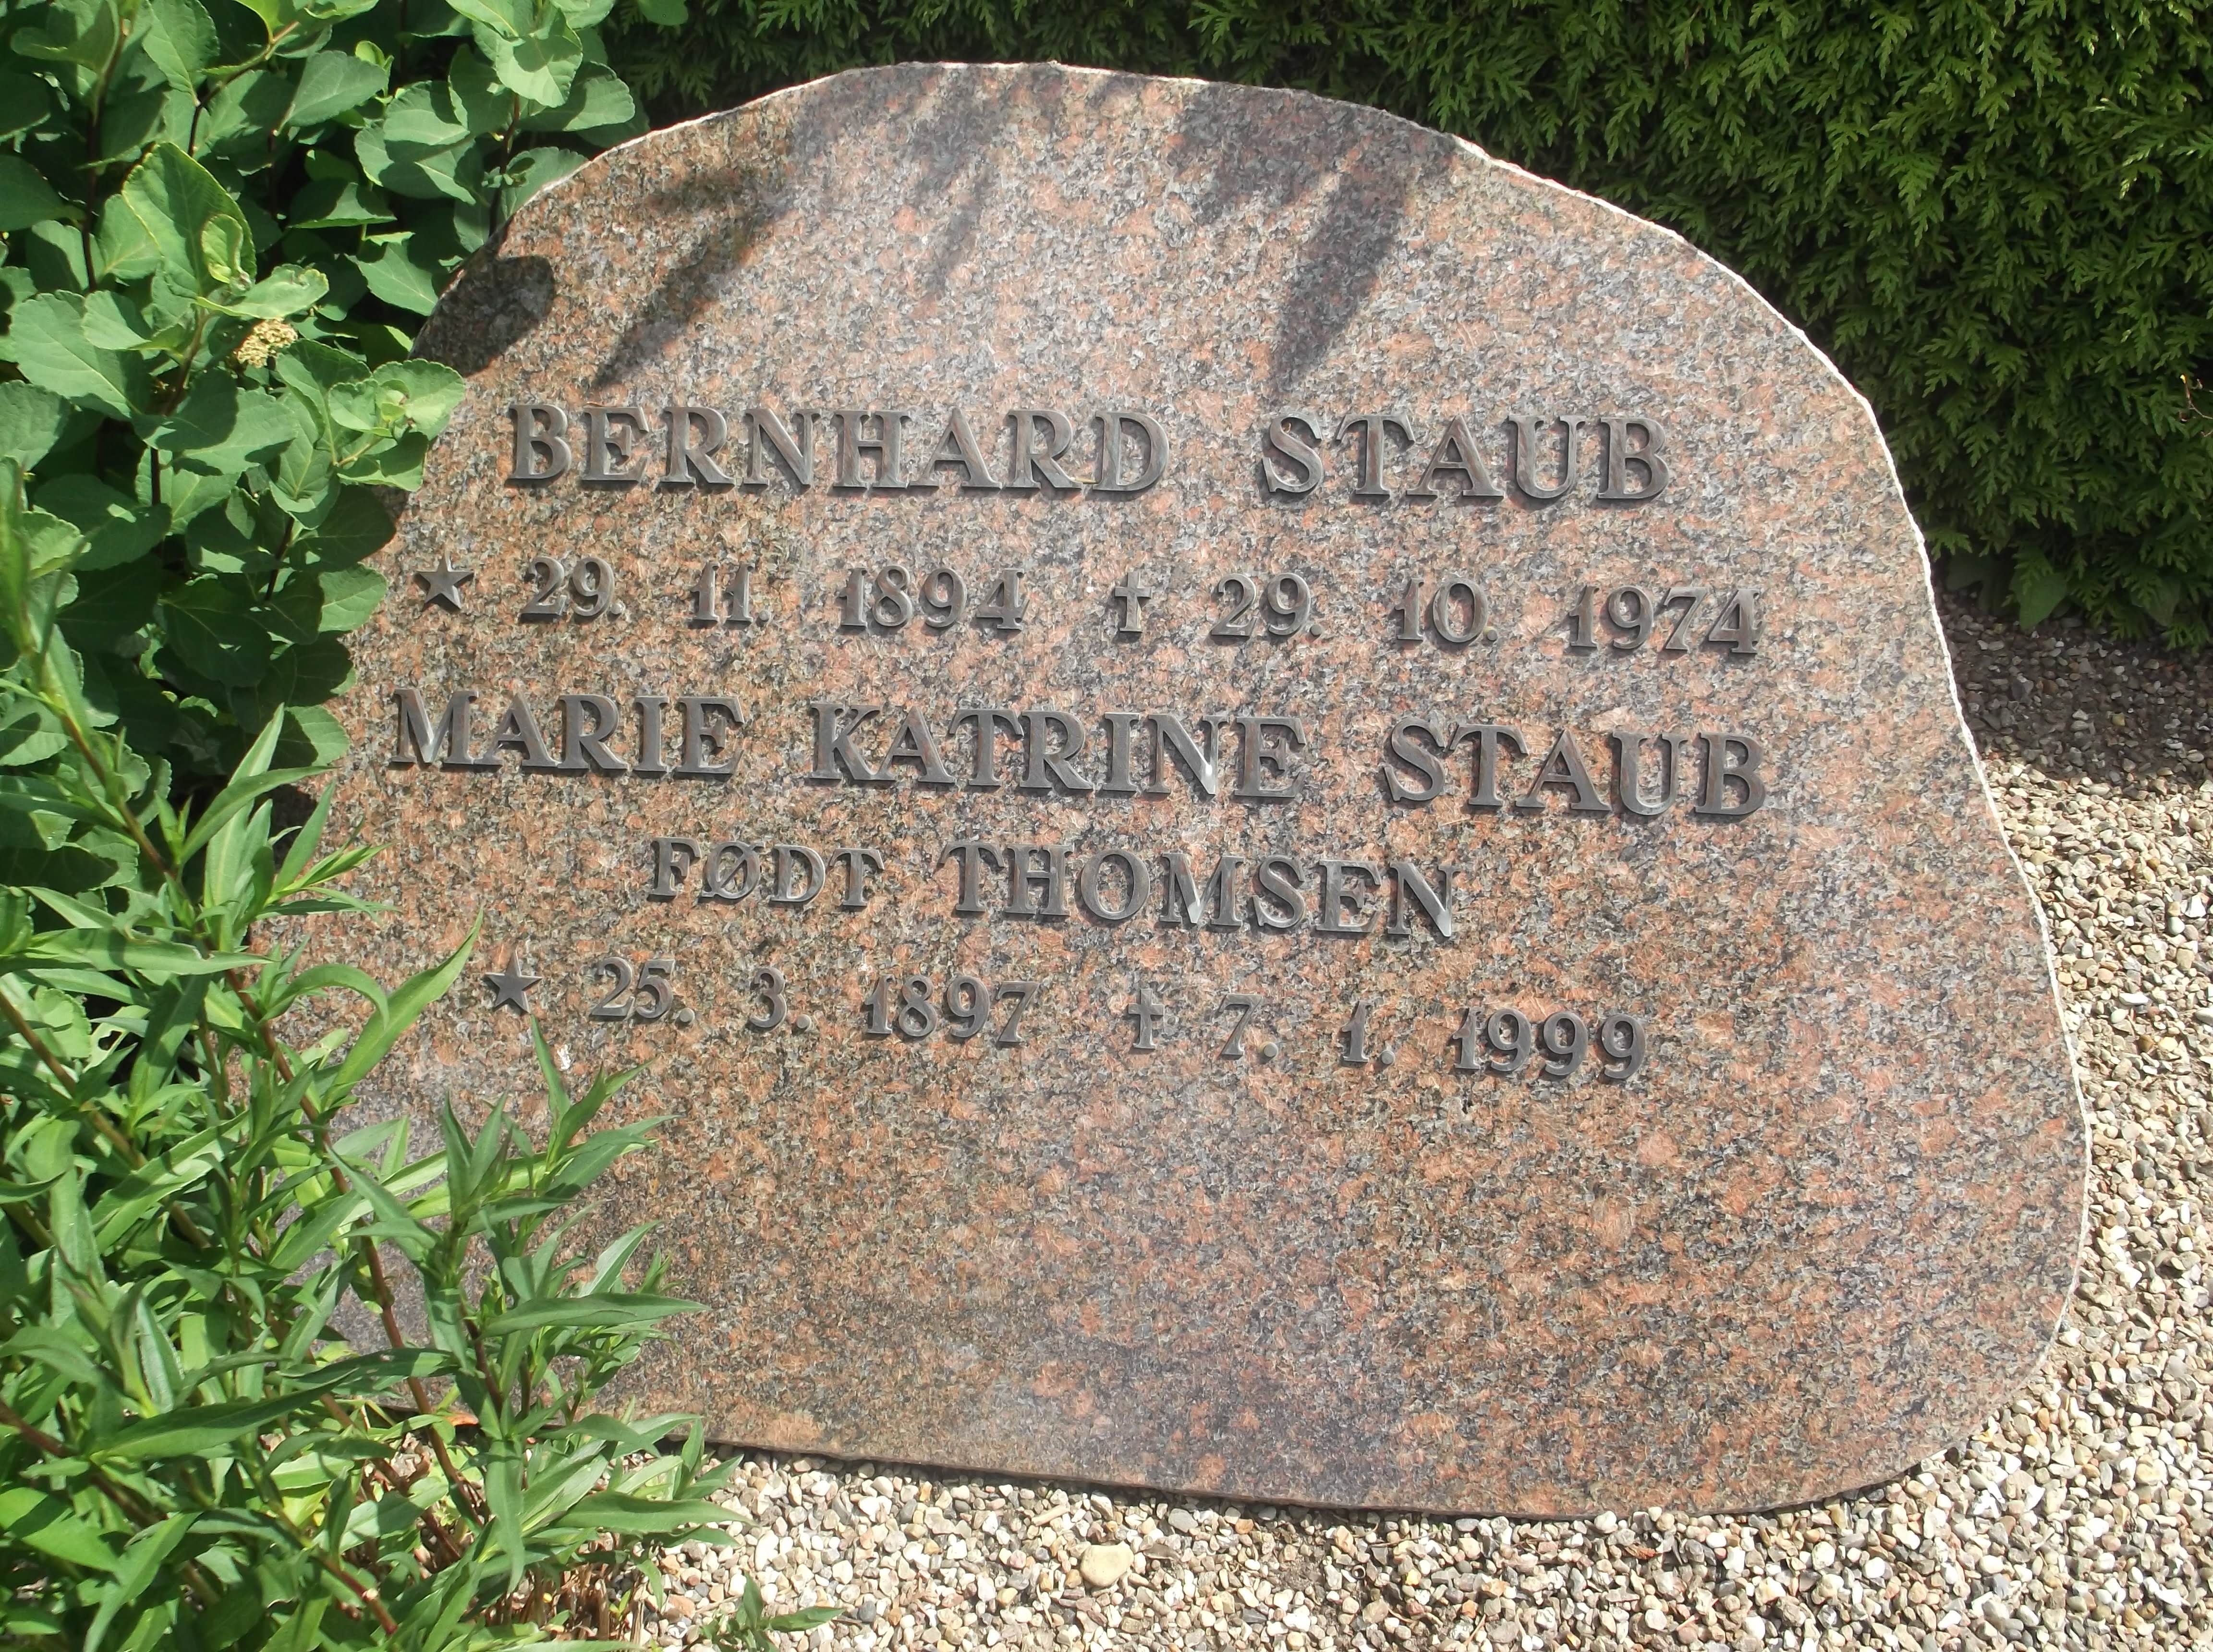 Bernhard Staub